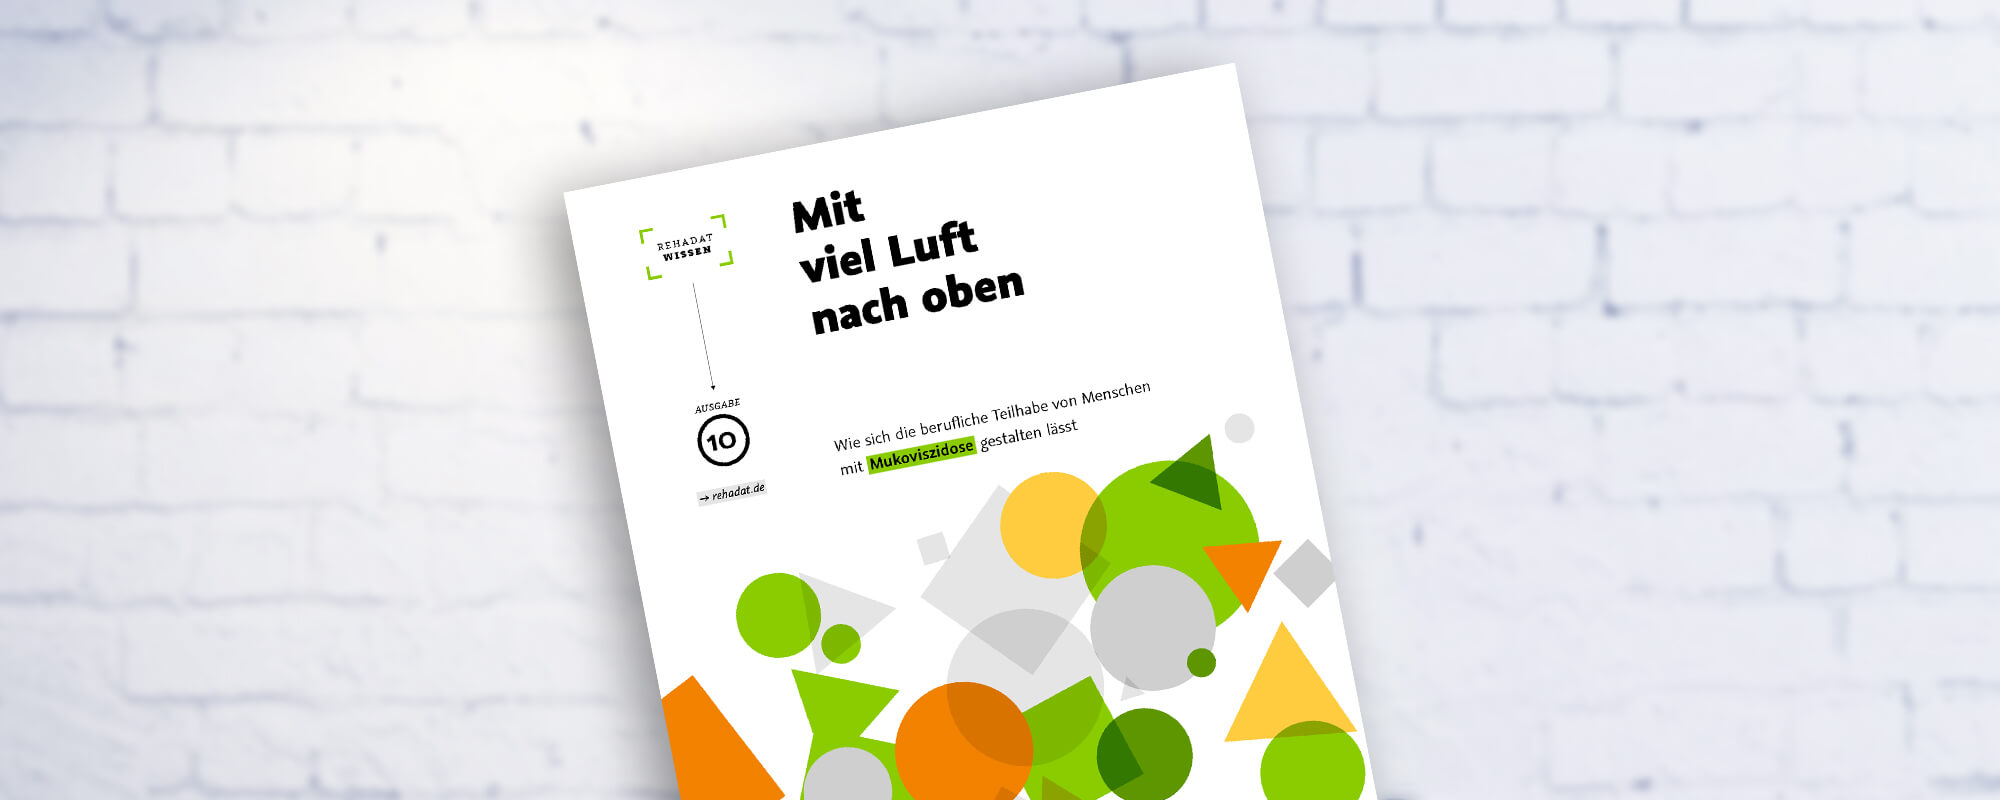 Cover der Publikation "Mit viel Luft nach oben". 